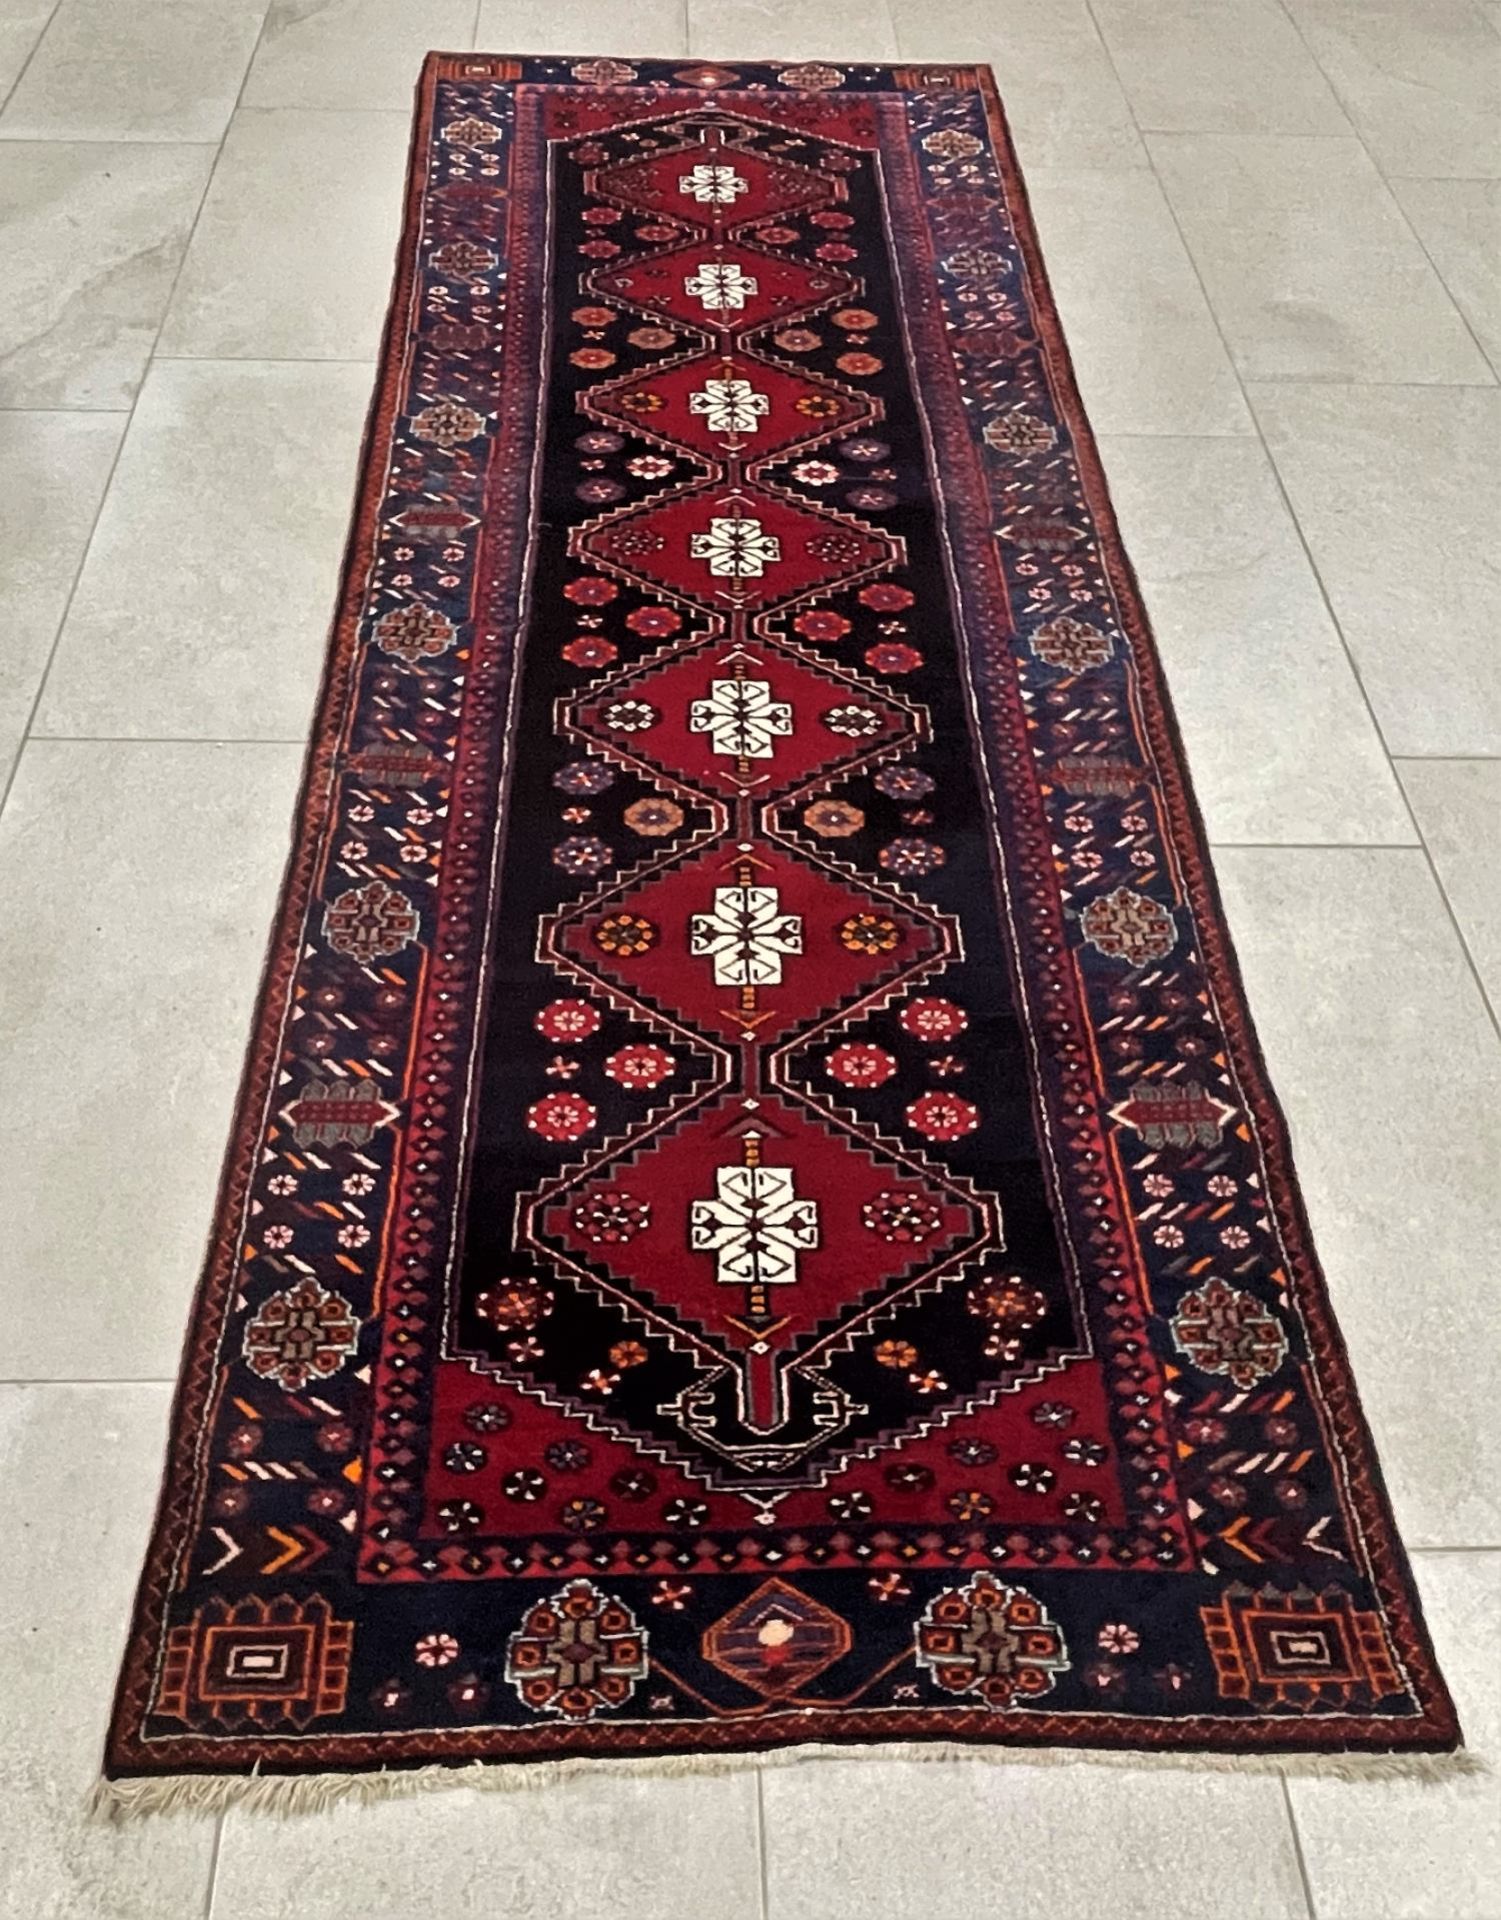 Sarand / Hamadan Persian carpet, runner 300 x 100 cm.